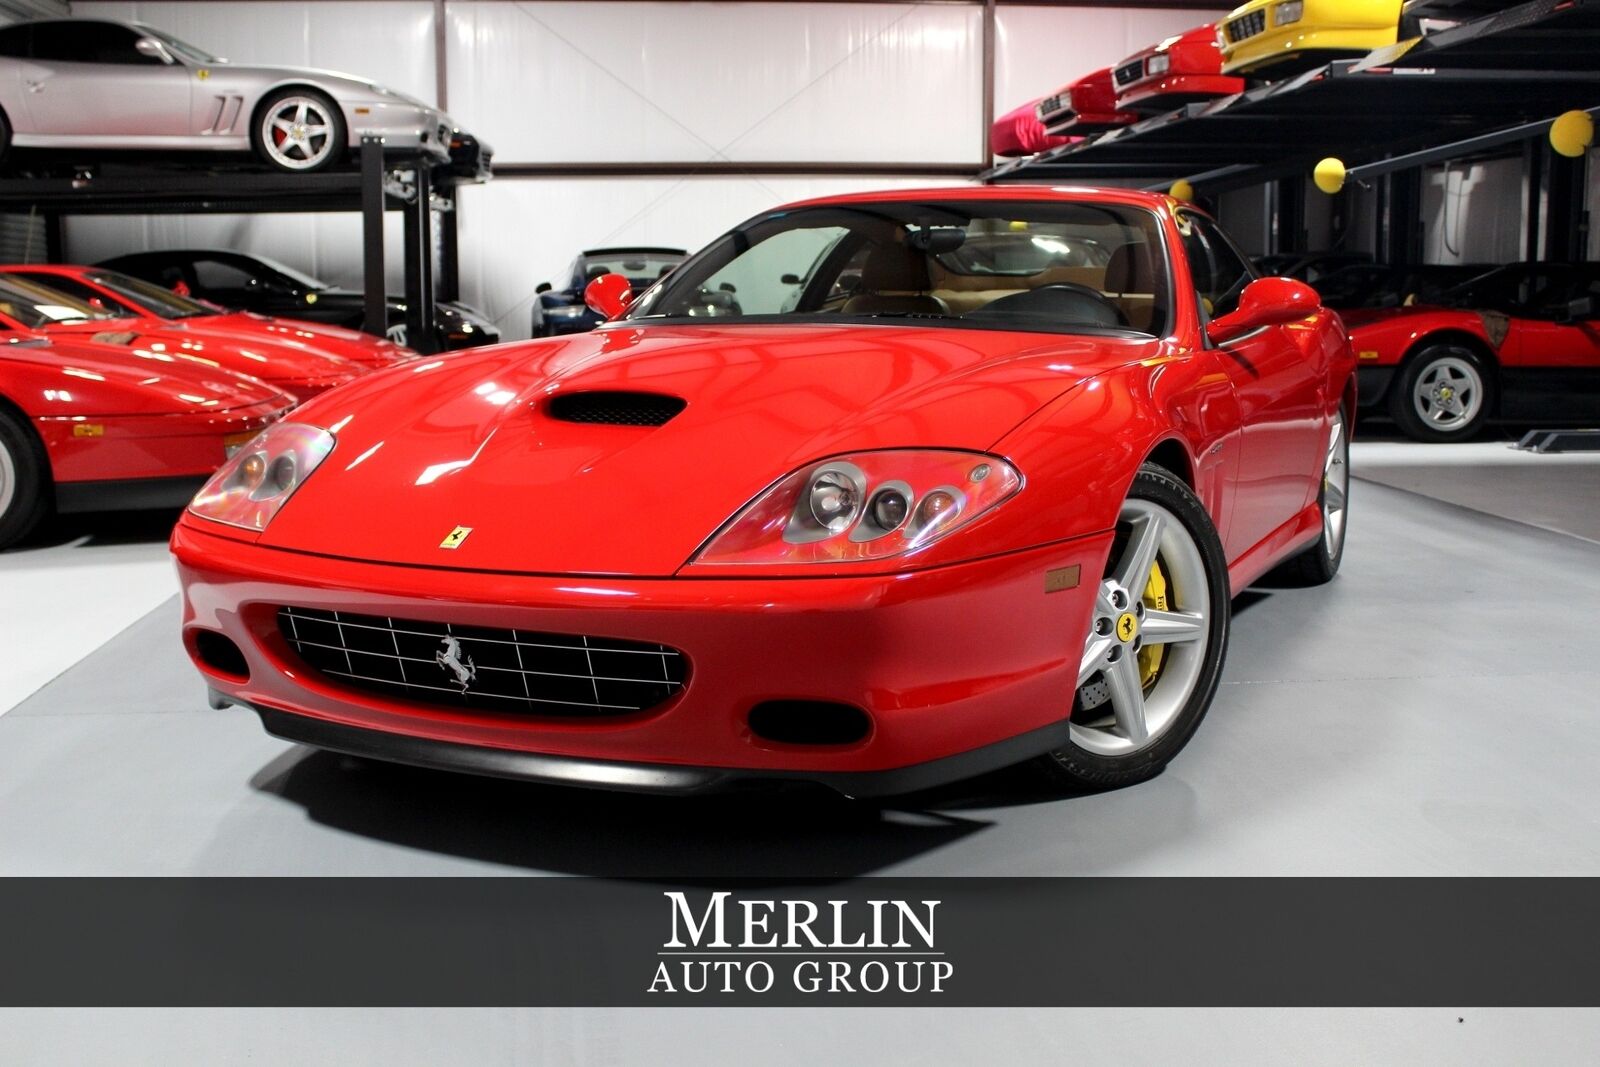 2005 Ferrari 575 Maranello Used 2005 Ferrari 575m Maranello Red Coupe 2-dr 5.7l V12 2-dohc 48v Automatic